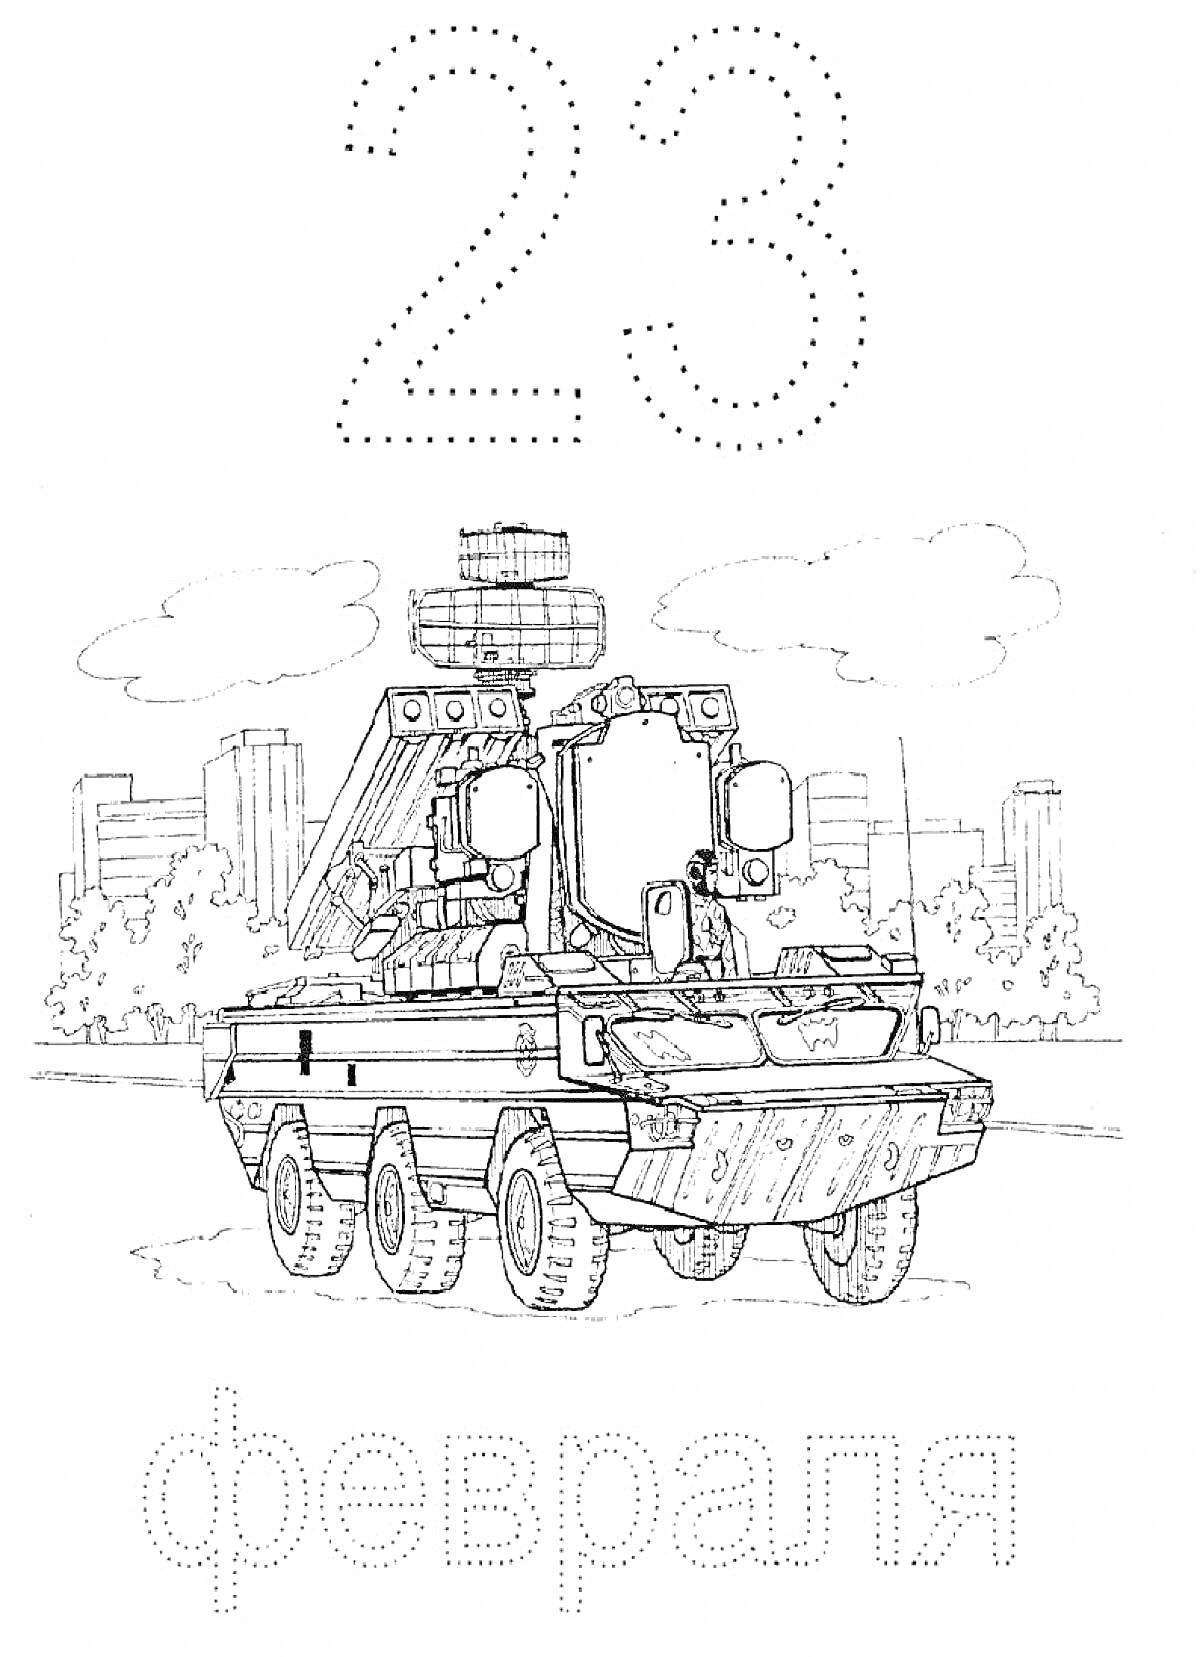 23 февраля: боевой бронетранспортёр с ракетной установкой на фоне городского пейзажа